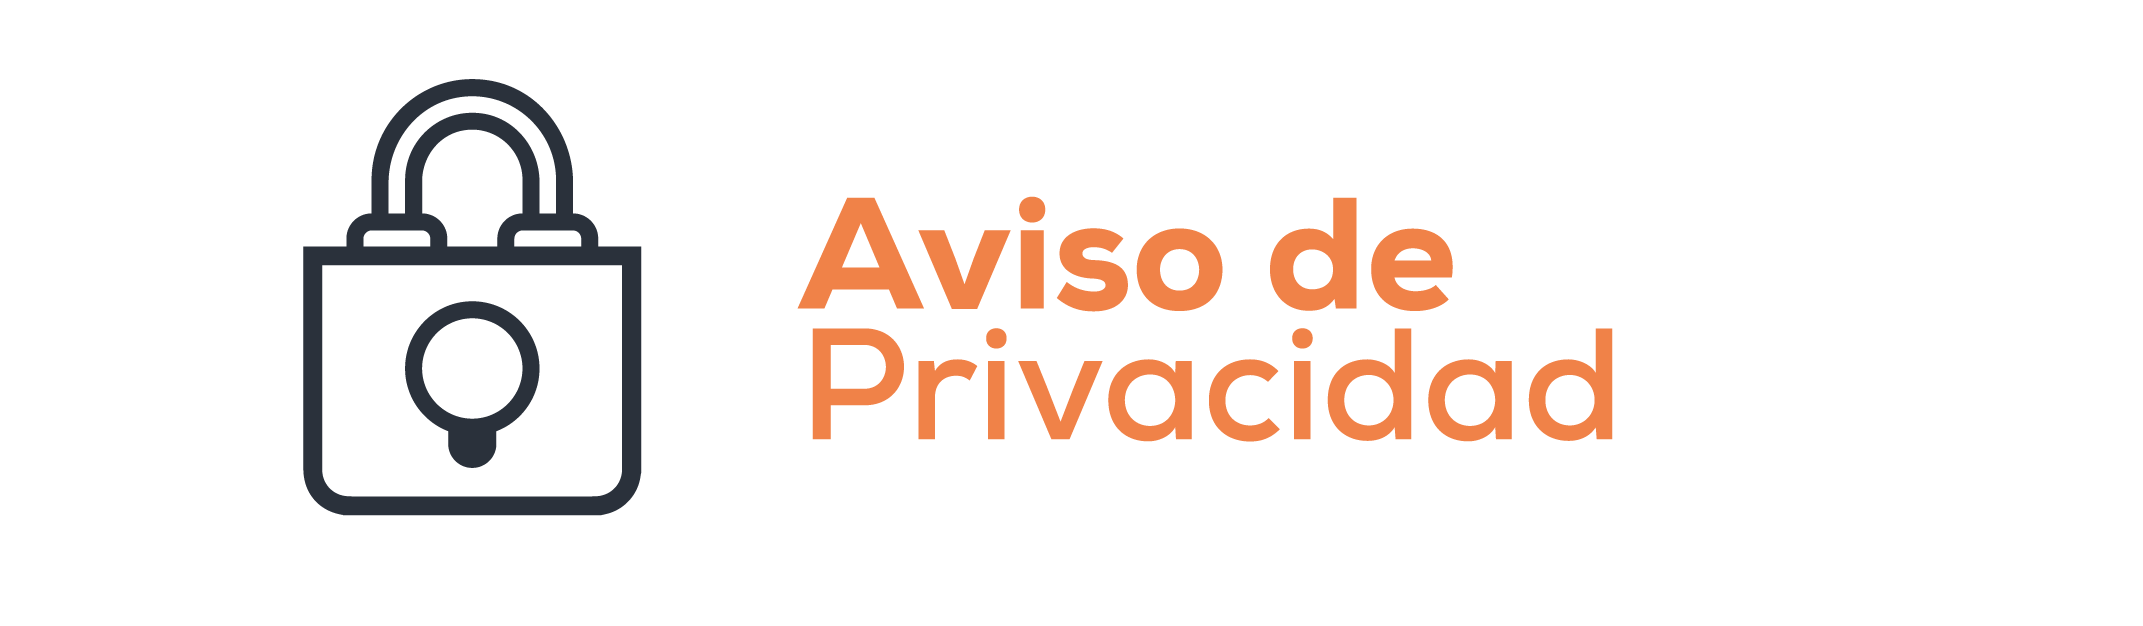 aviso_de_privacidad